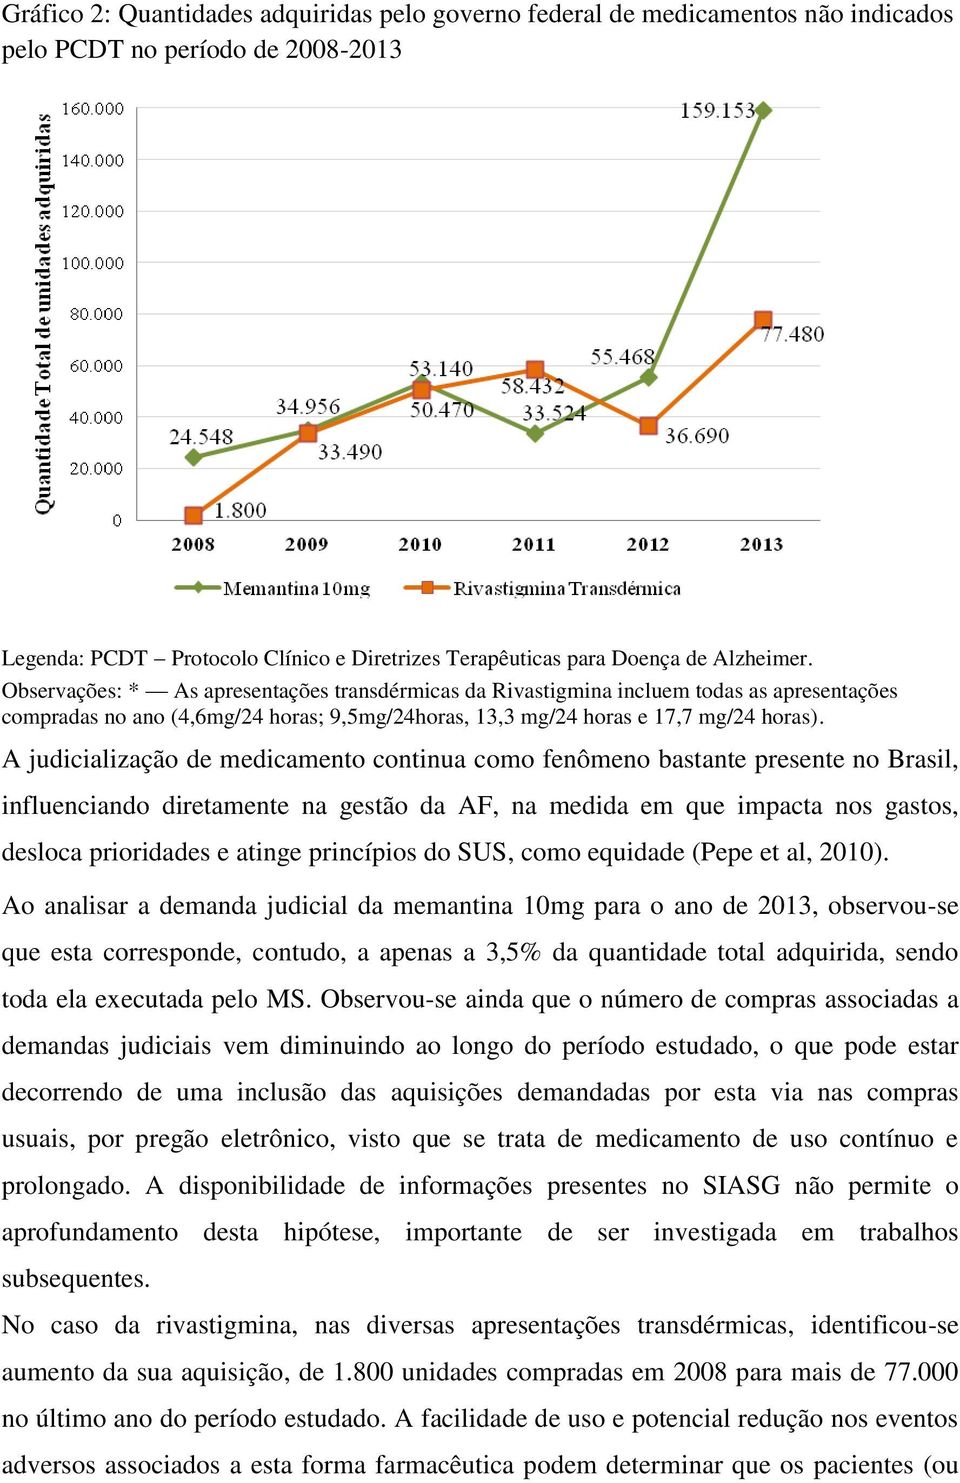 A judicialização de medicamento continua como fenômeno bastante presente no Brasil, influenciando diretamente na gestão da AF, na medida em que impacta nos gastos, desloca prioridades e atinge